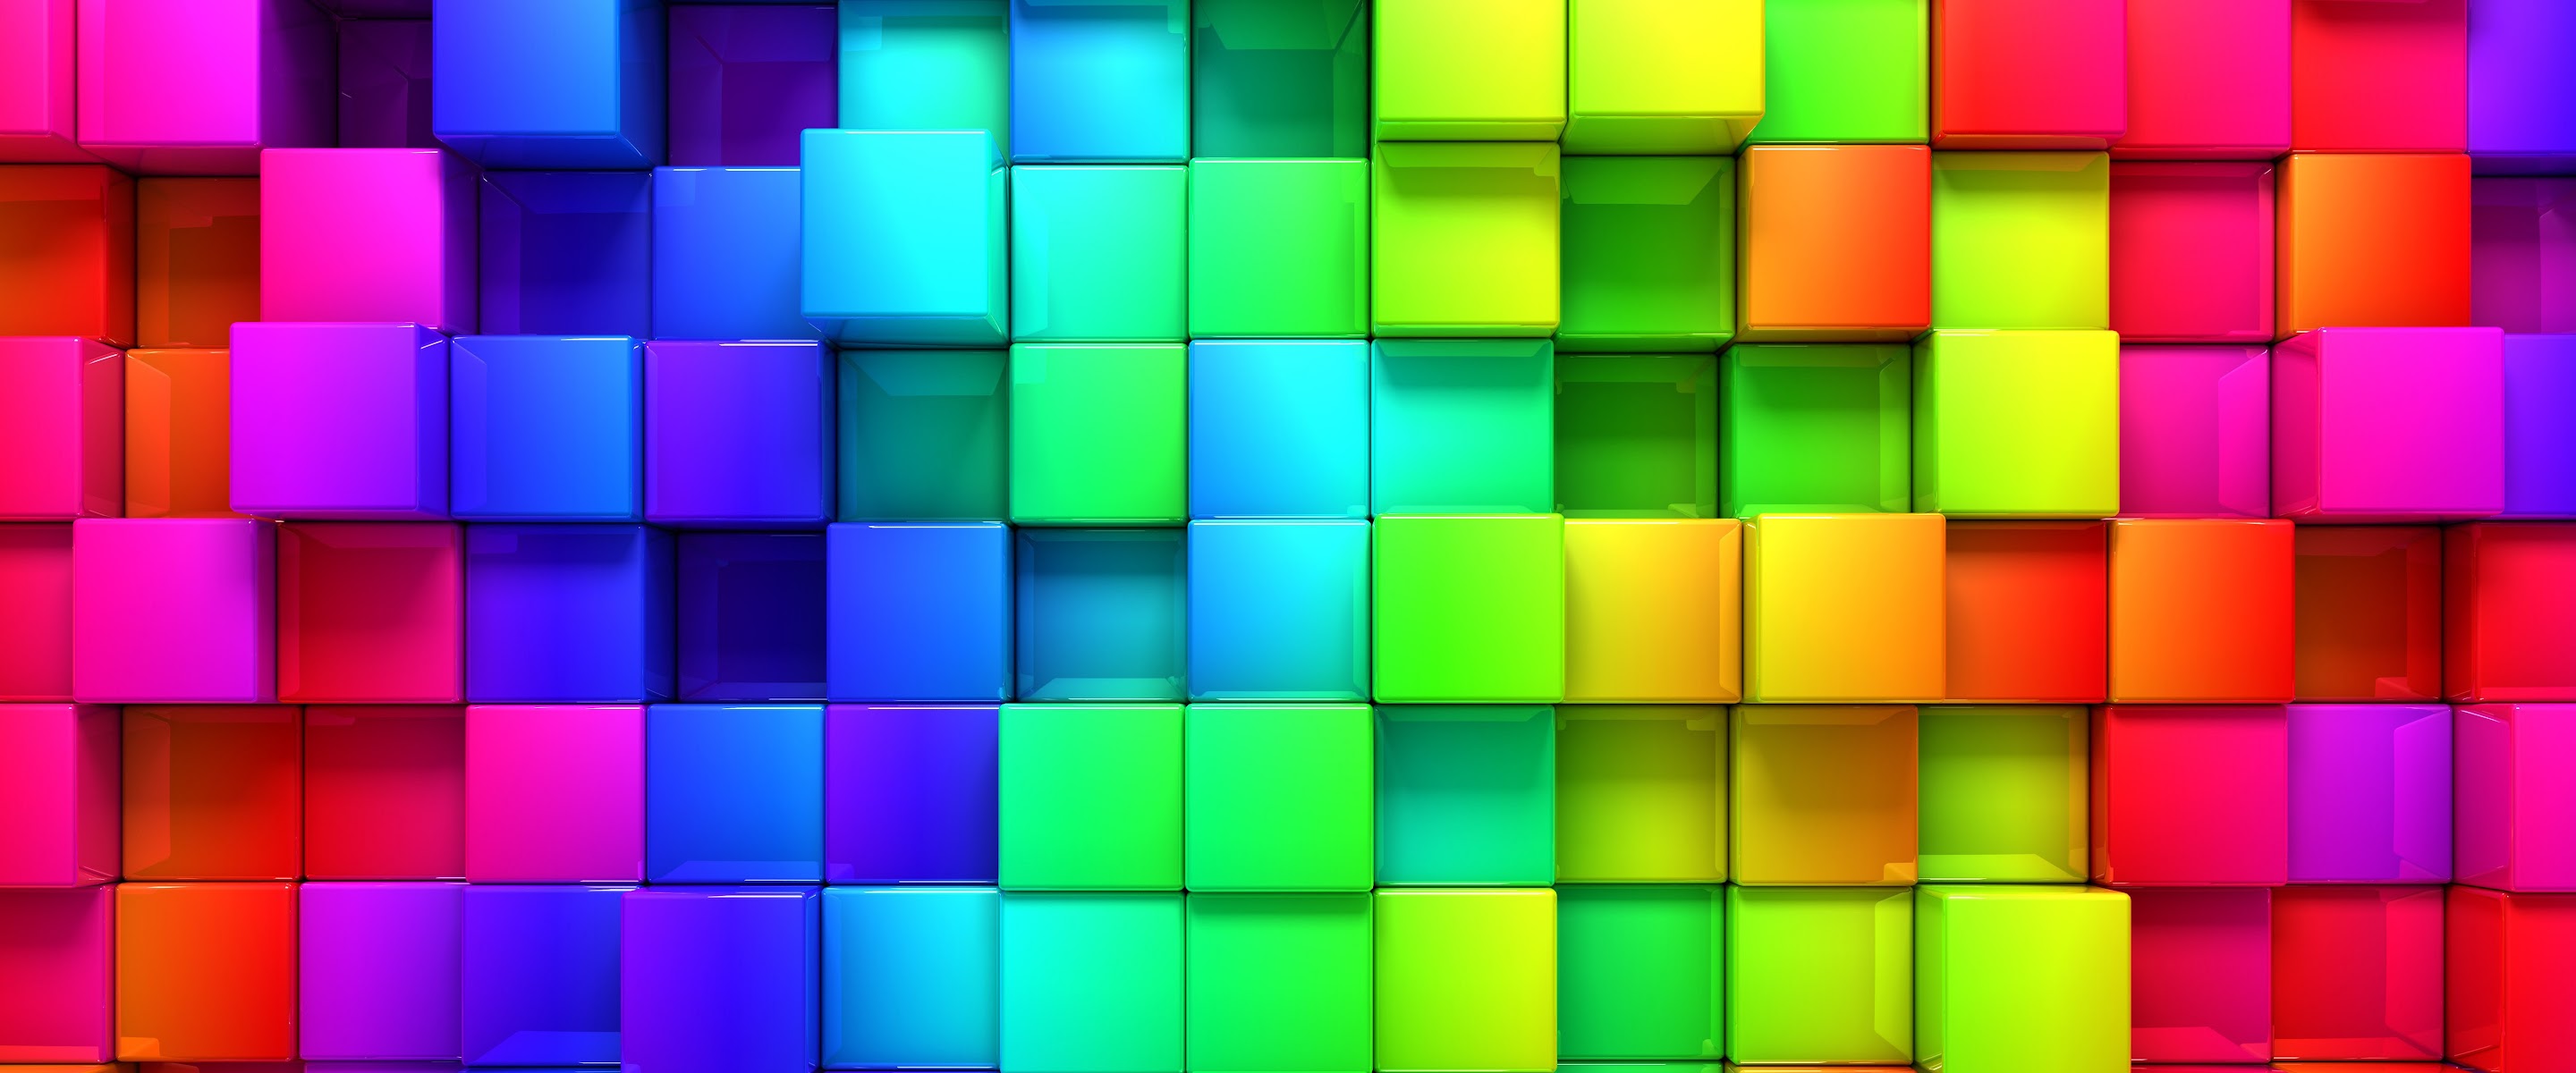 Маленький цветные квадратики. Разноцветные кубики. Разноцветные квадратики. Цветные прямоугольники. Цветовой квадрат.